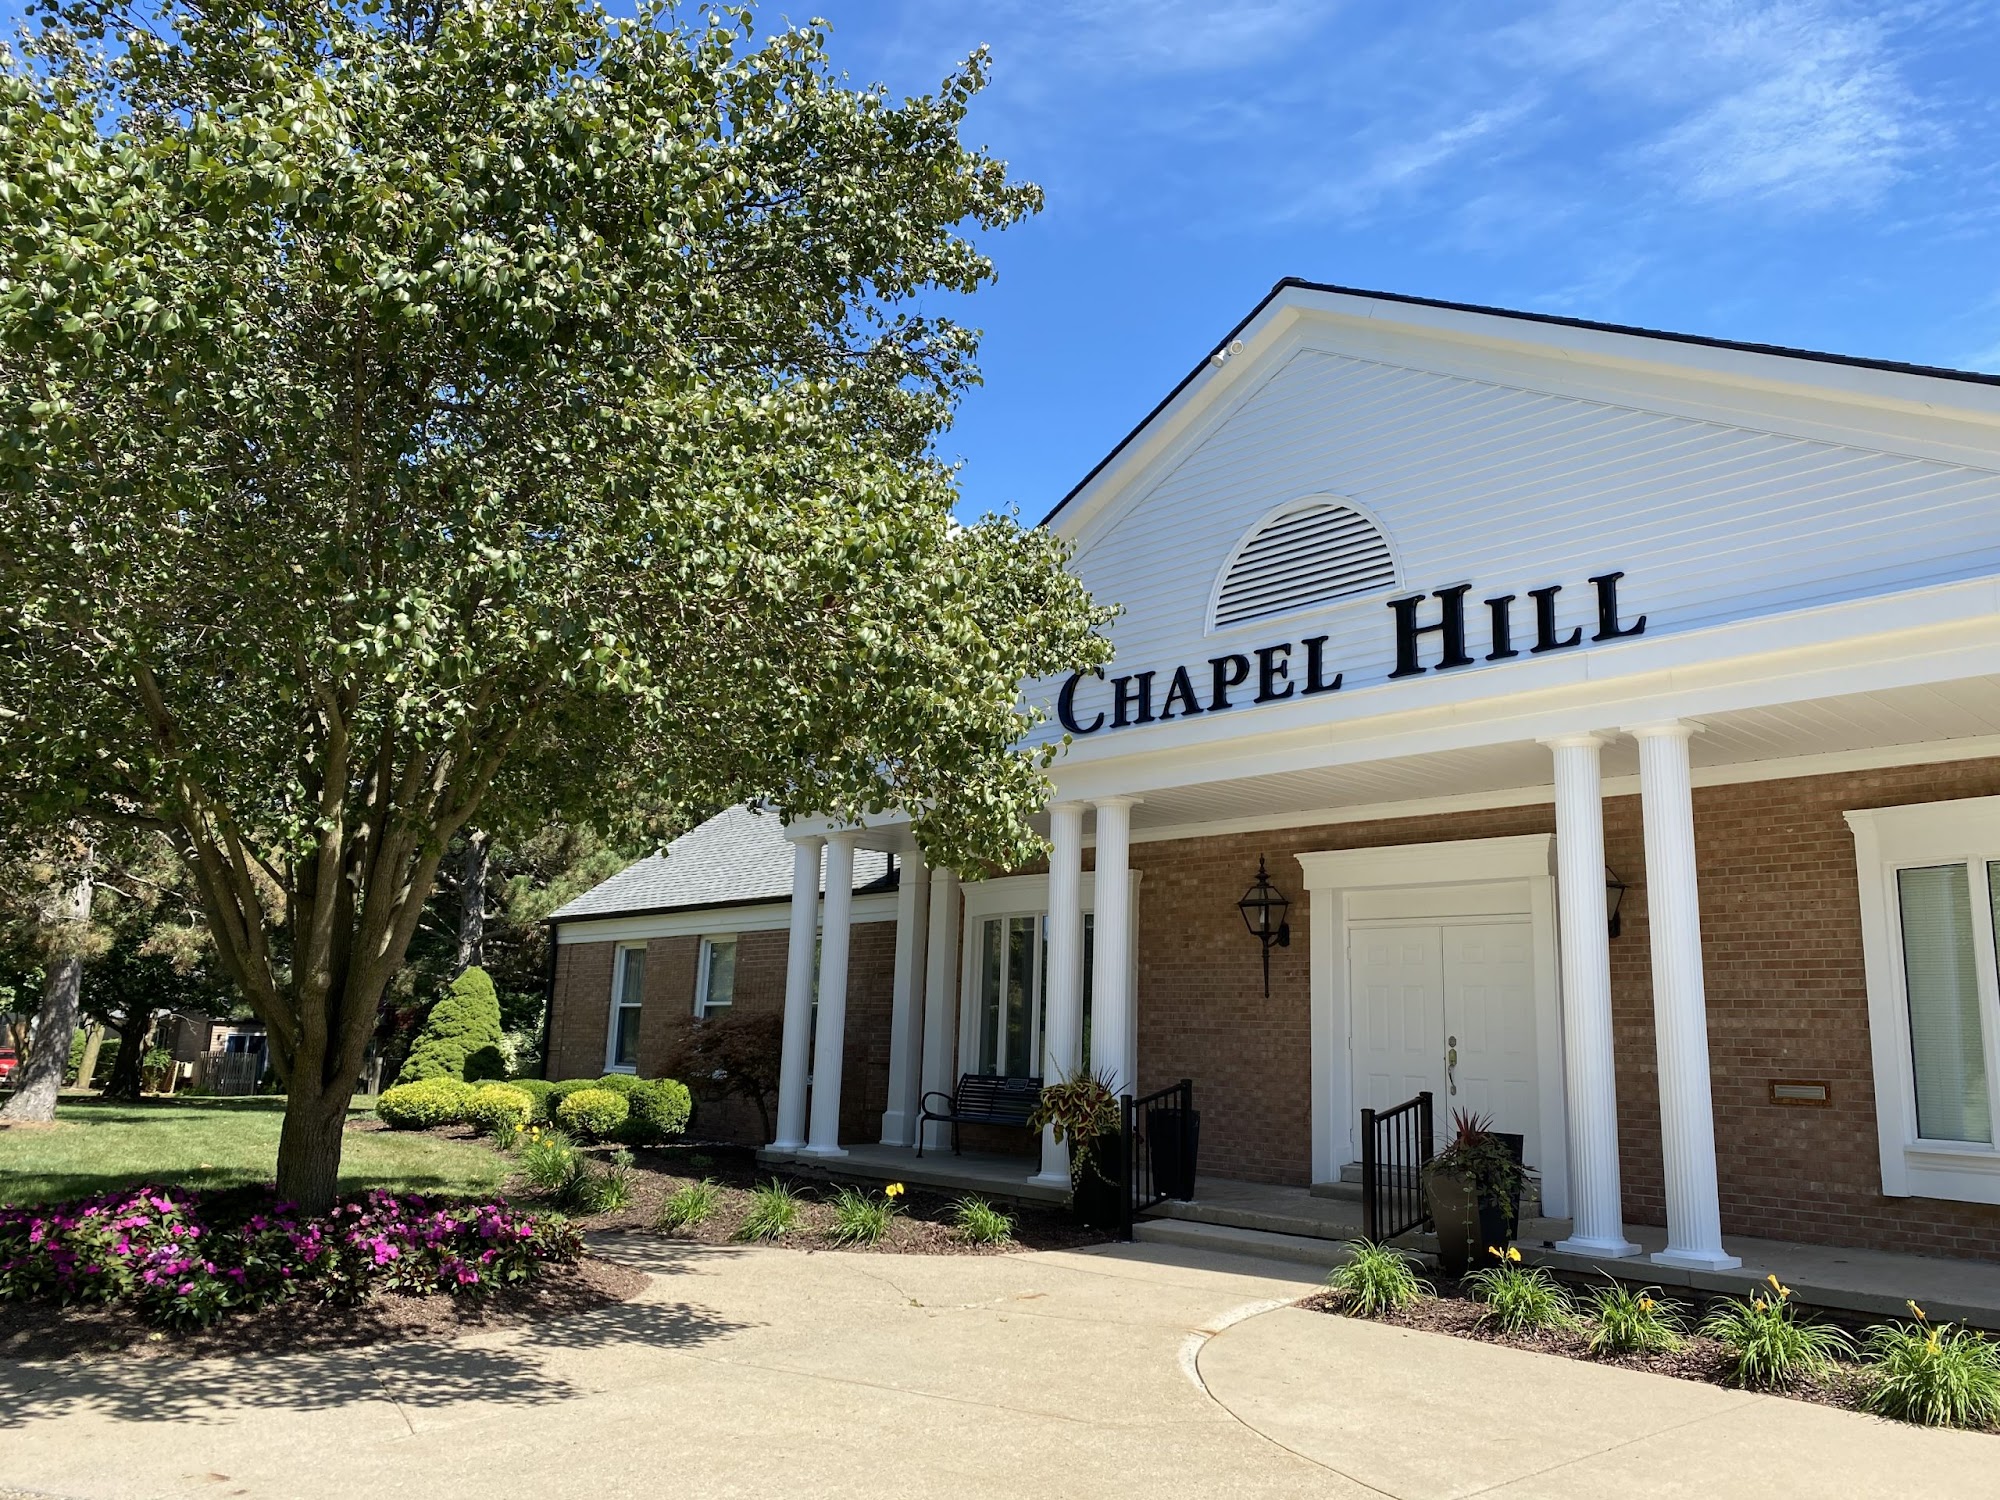 Chapel Hill Condominium Association